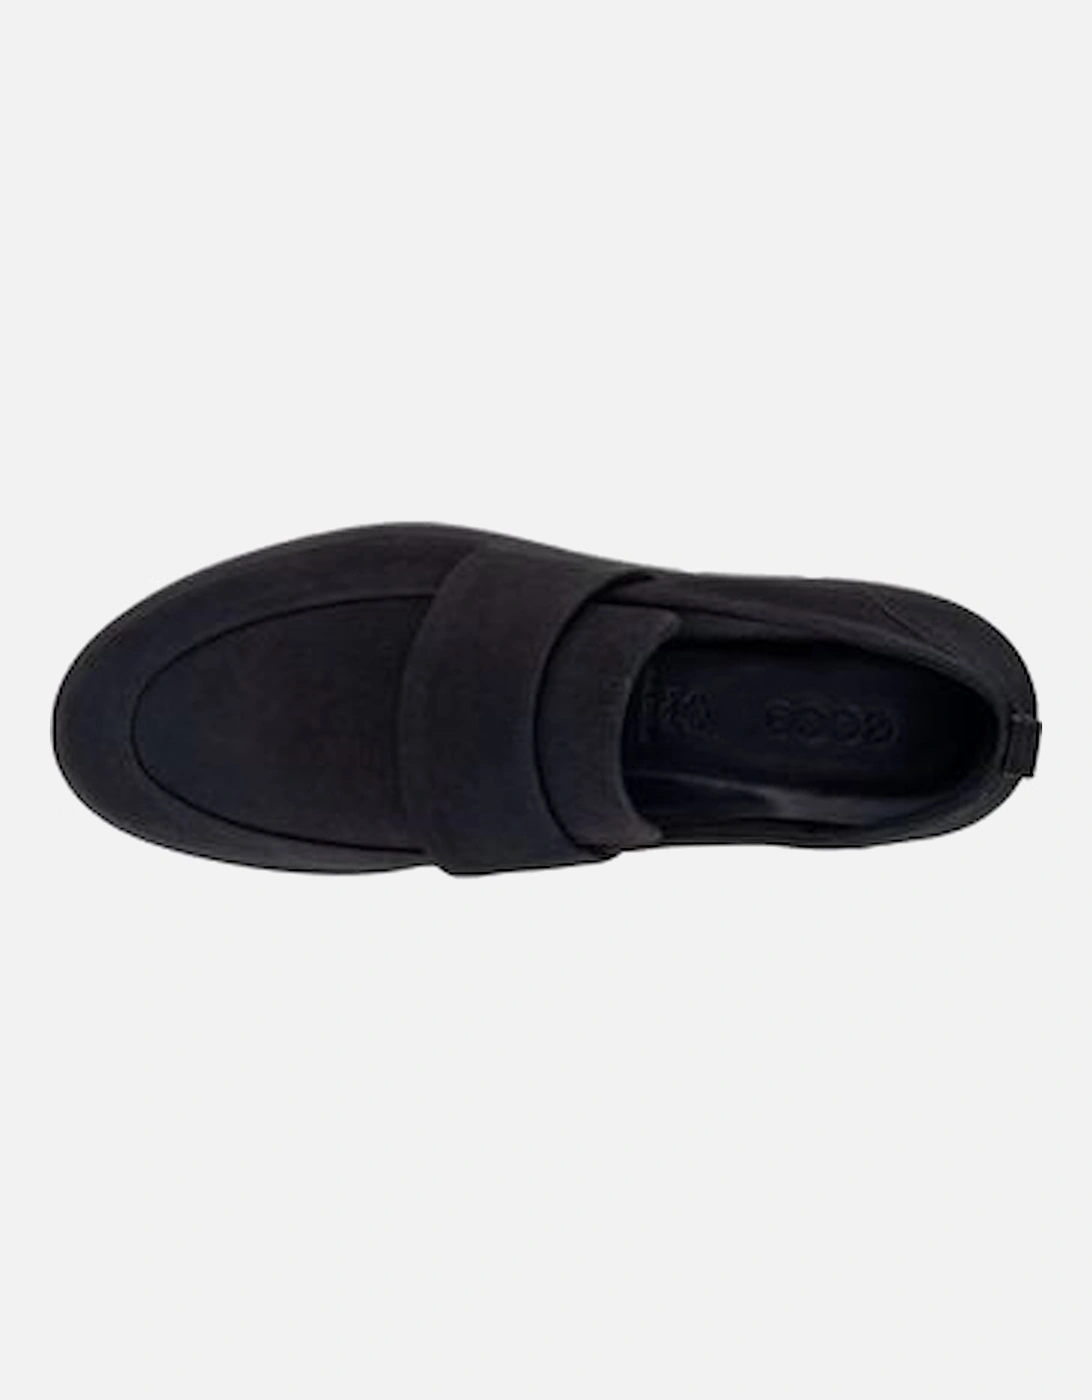 Ladies shoe 282303-02001 in black Nubuck